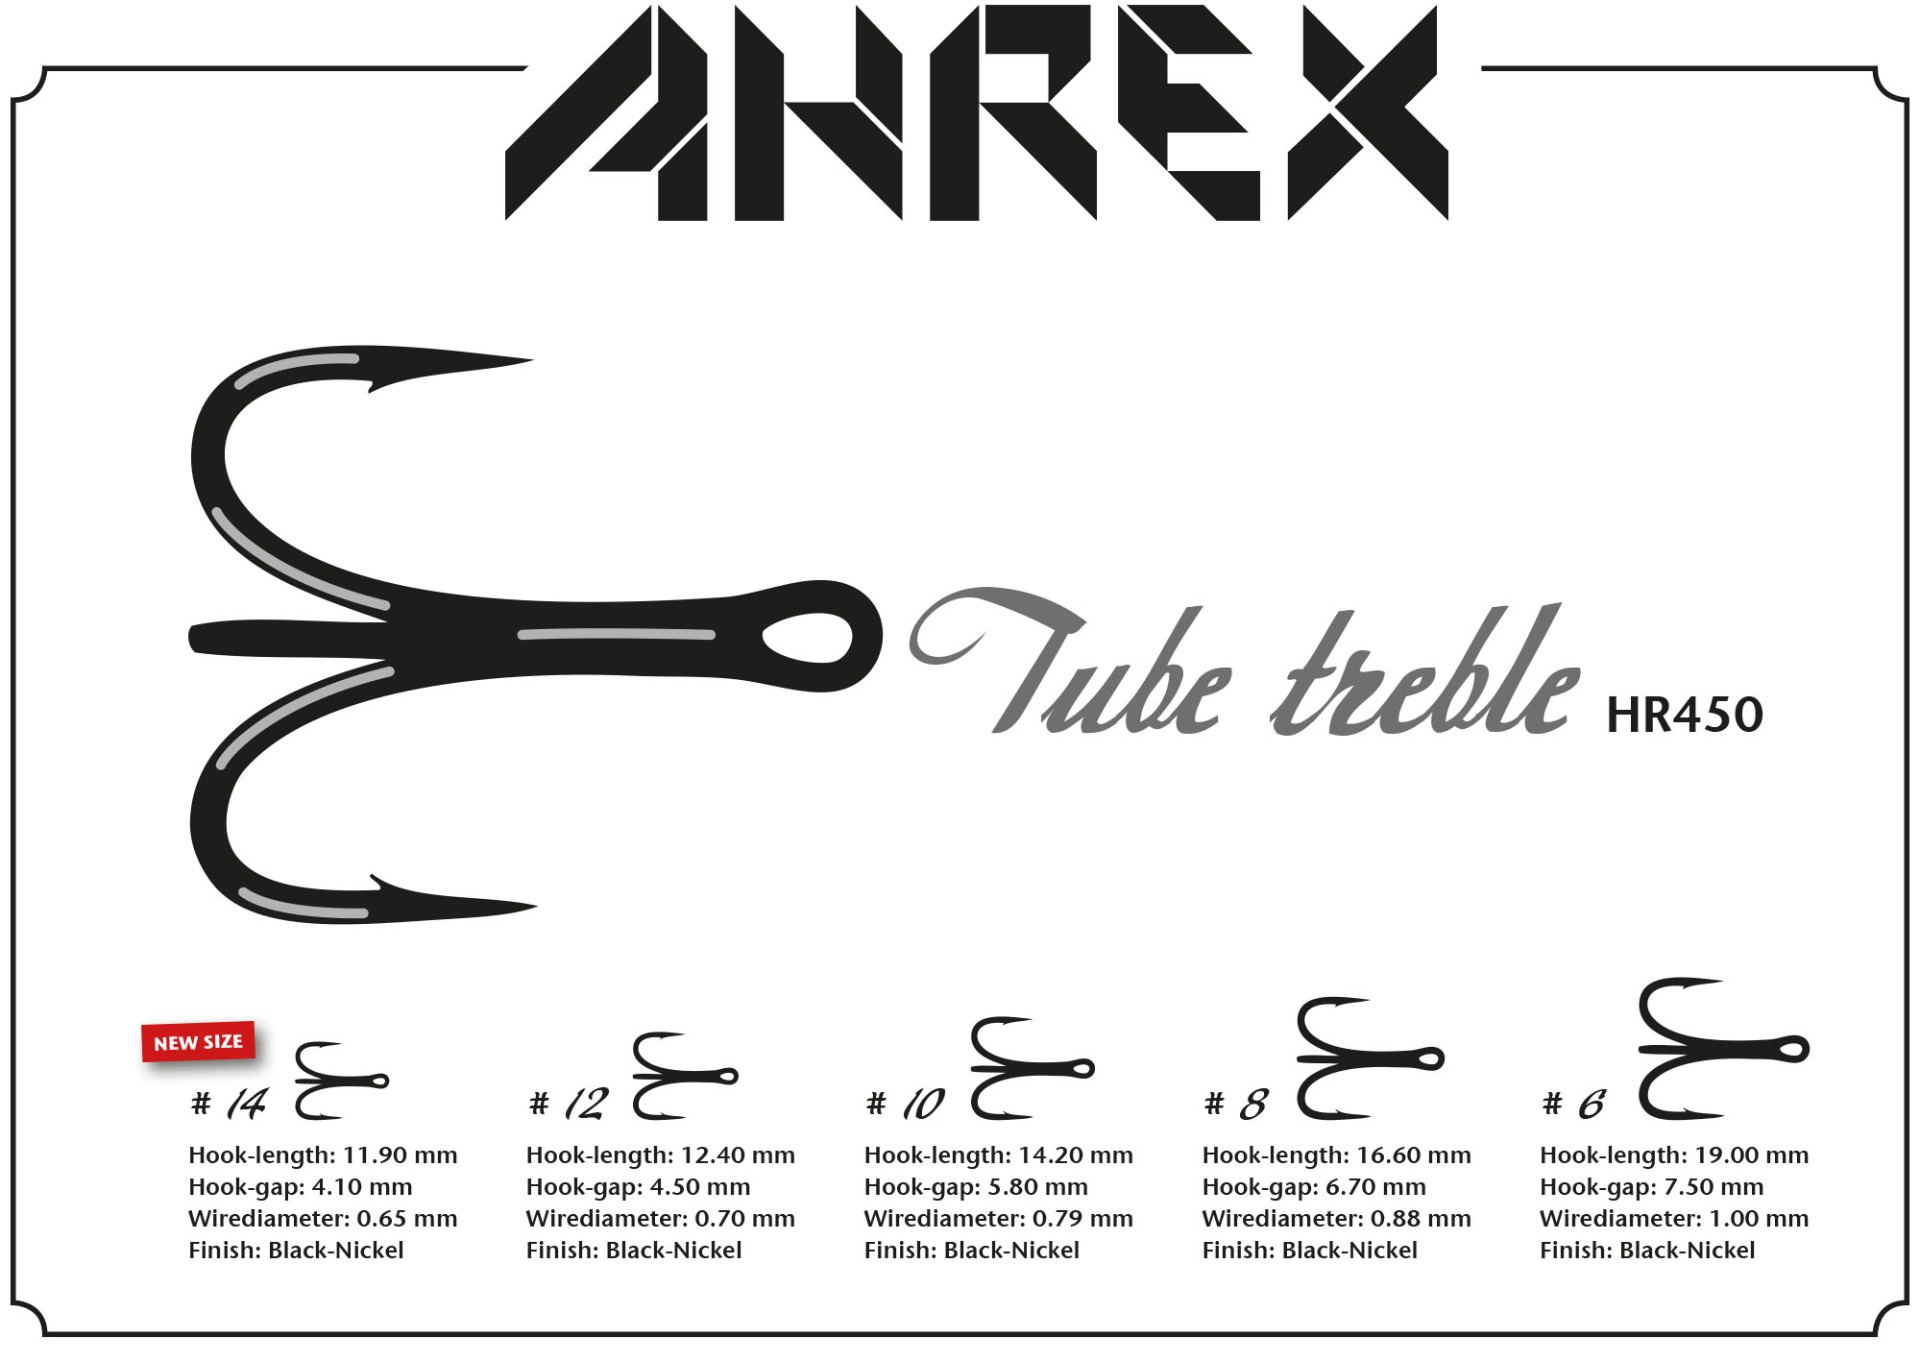 Ahrex Triple Tube #10